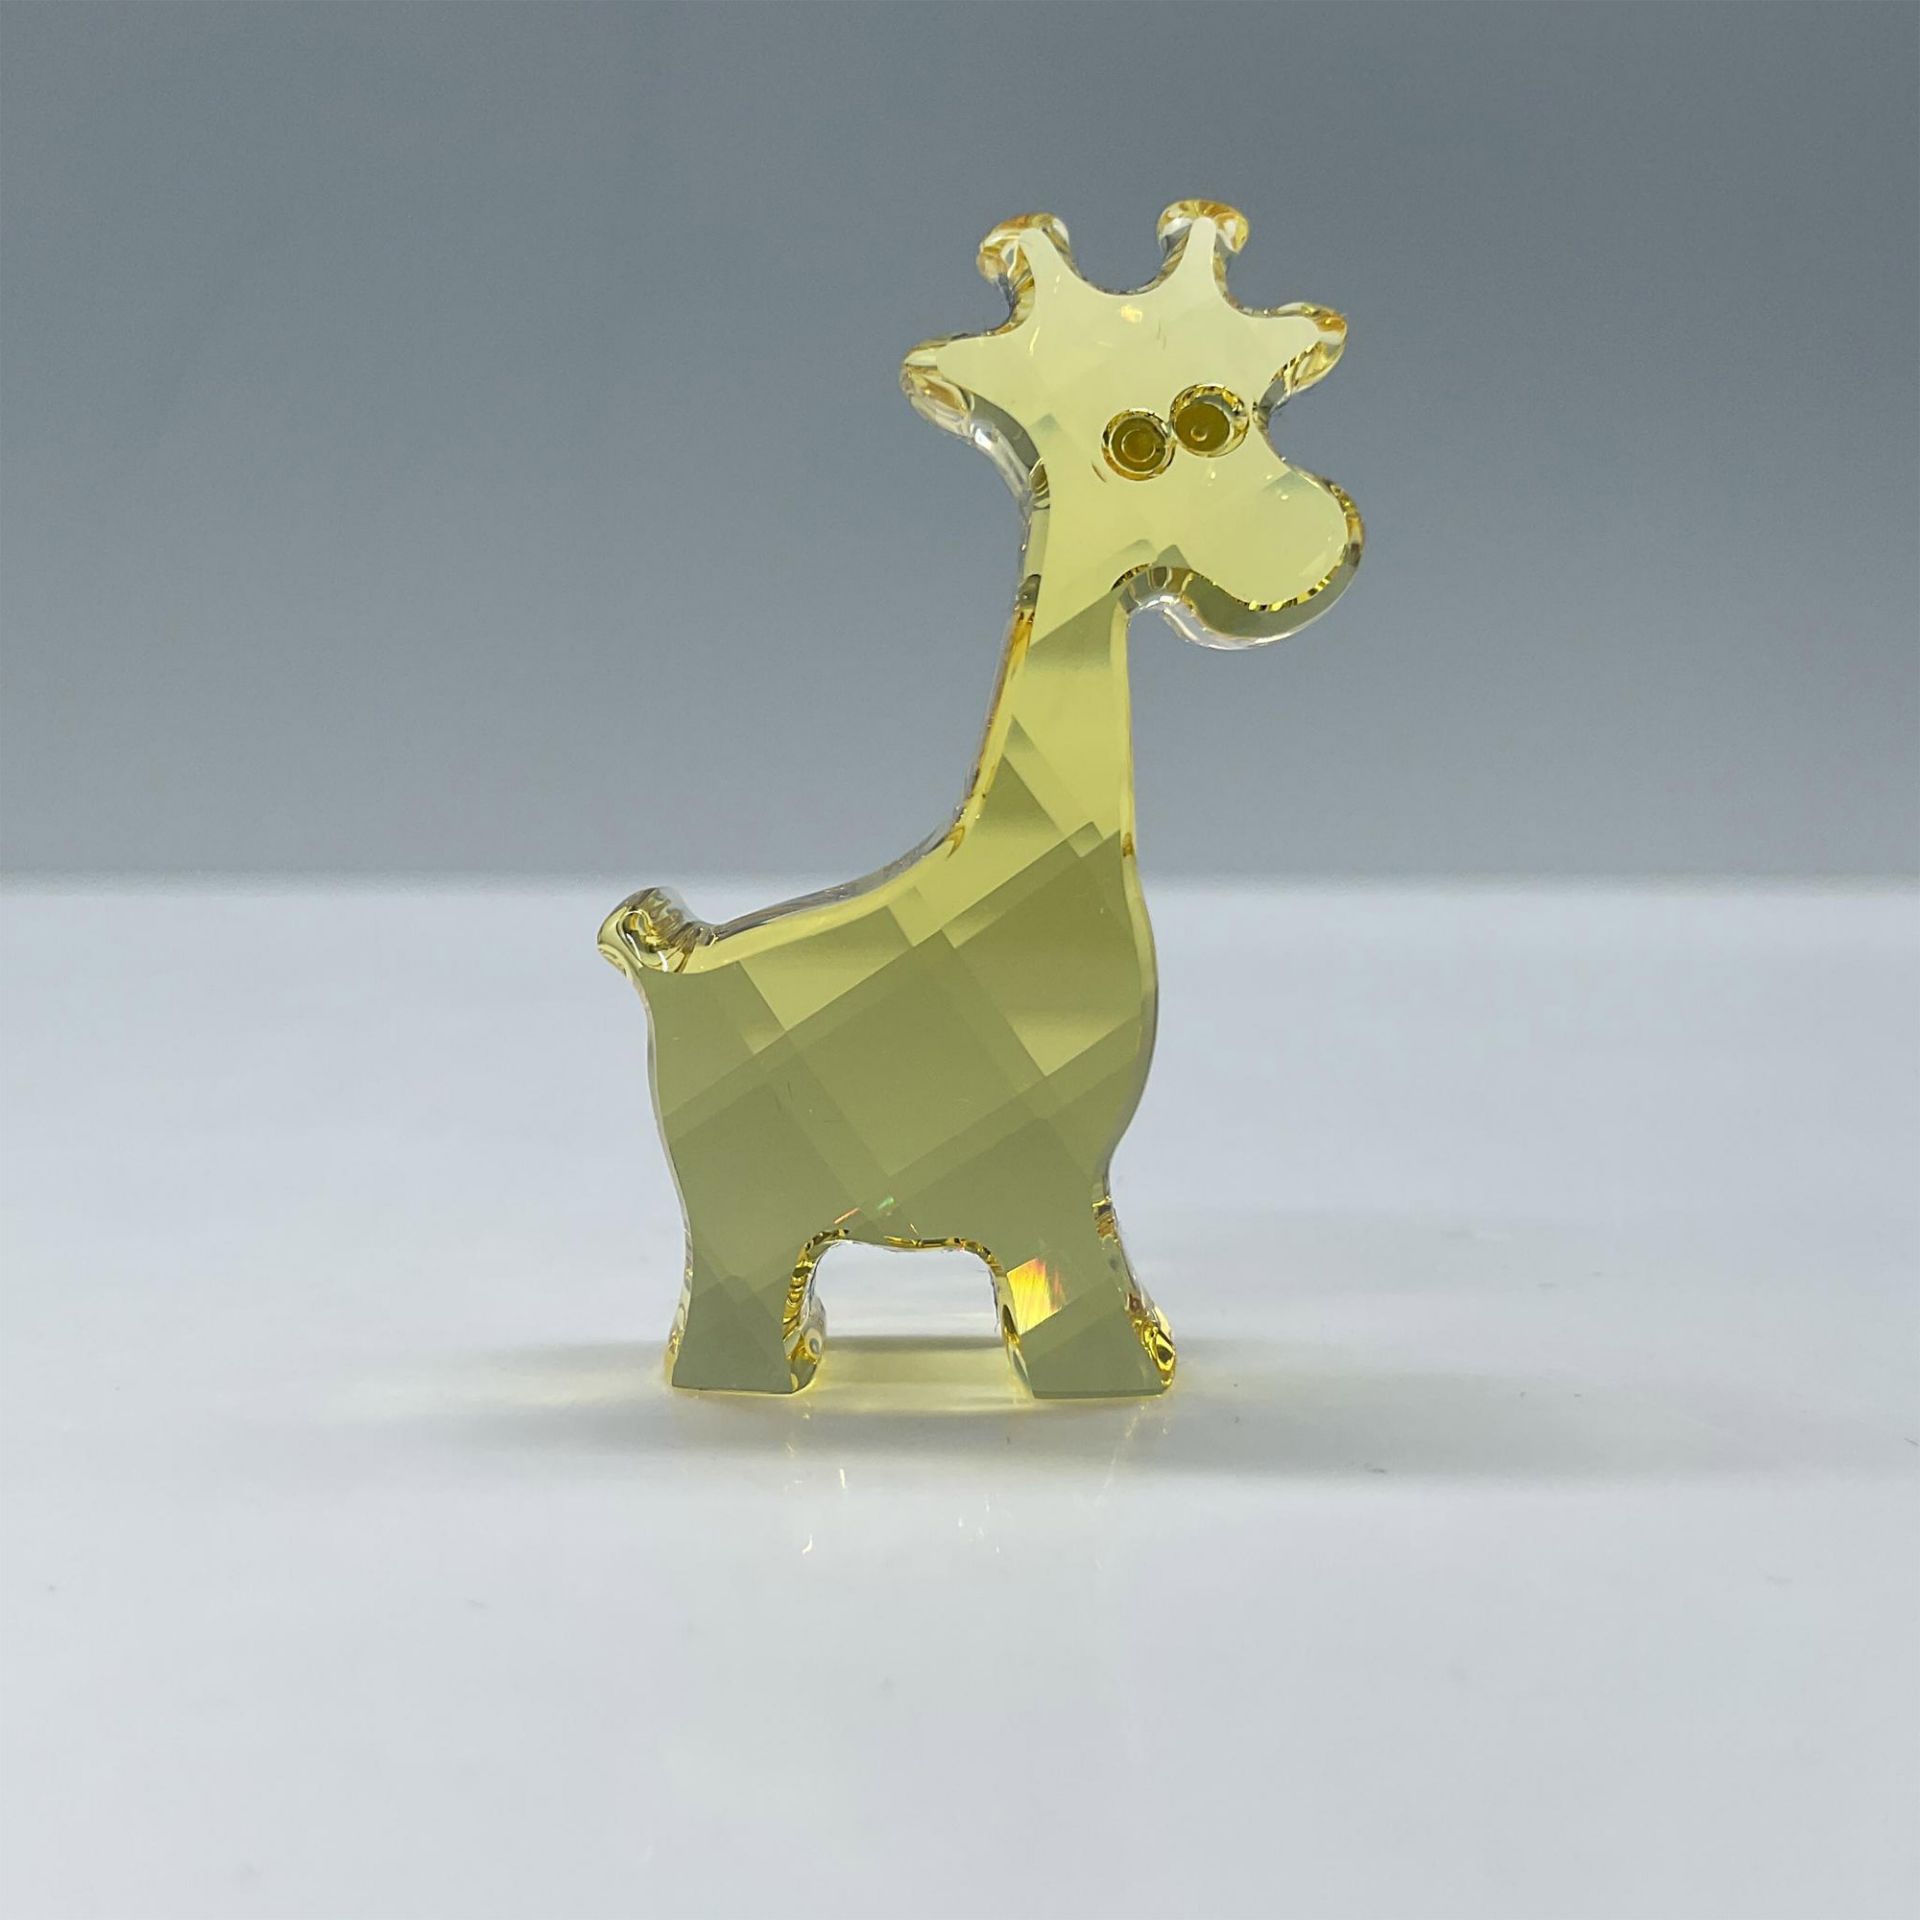 Swarovski Crystal Figurine, Gina the Giraffe - Bild 2 aus 4